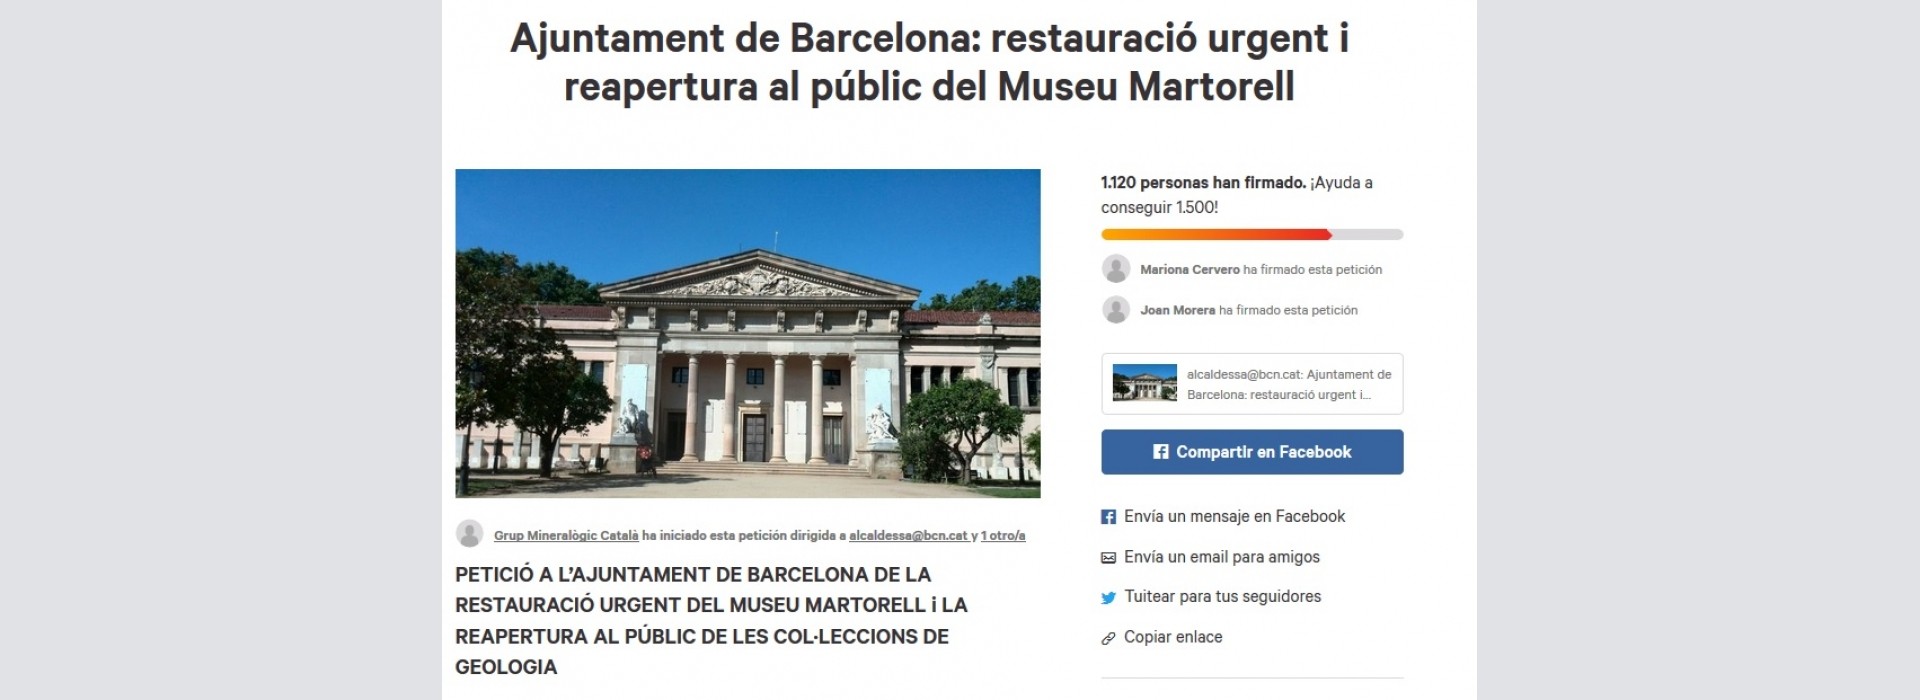 Necessitem firmes! Ajuntament de Barcelona: restauració urgent i reapertura al públic del Museu Martorell